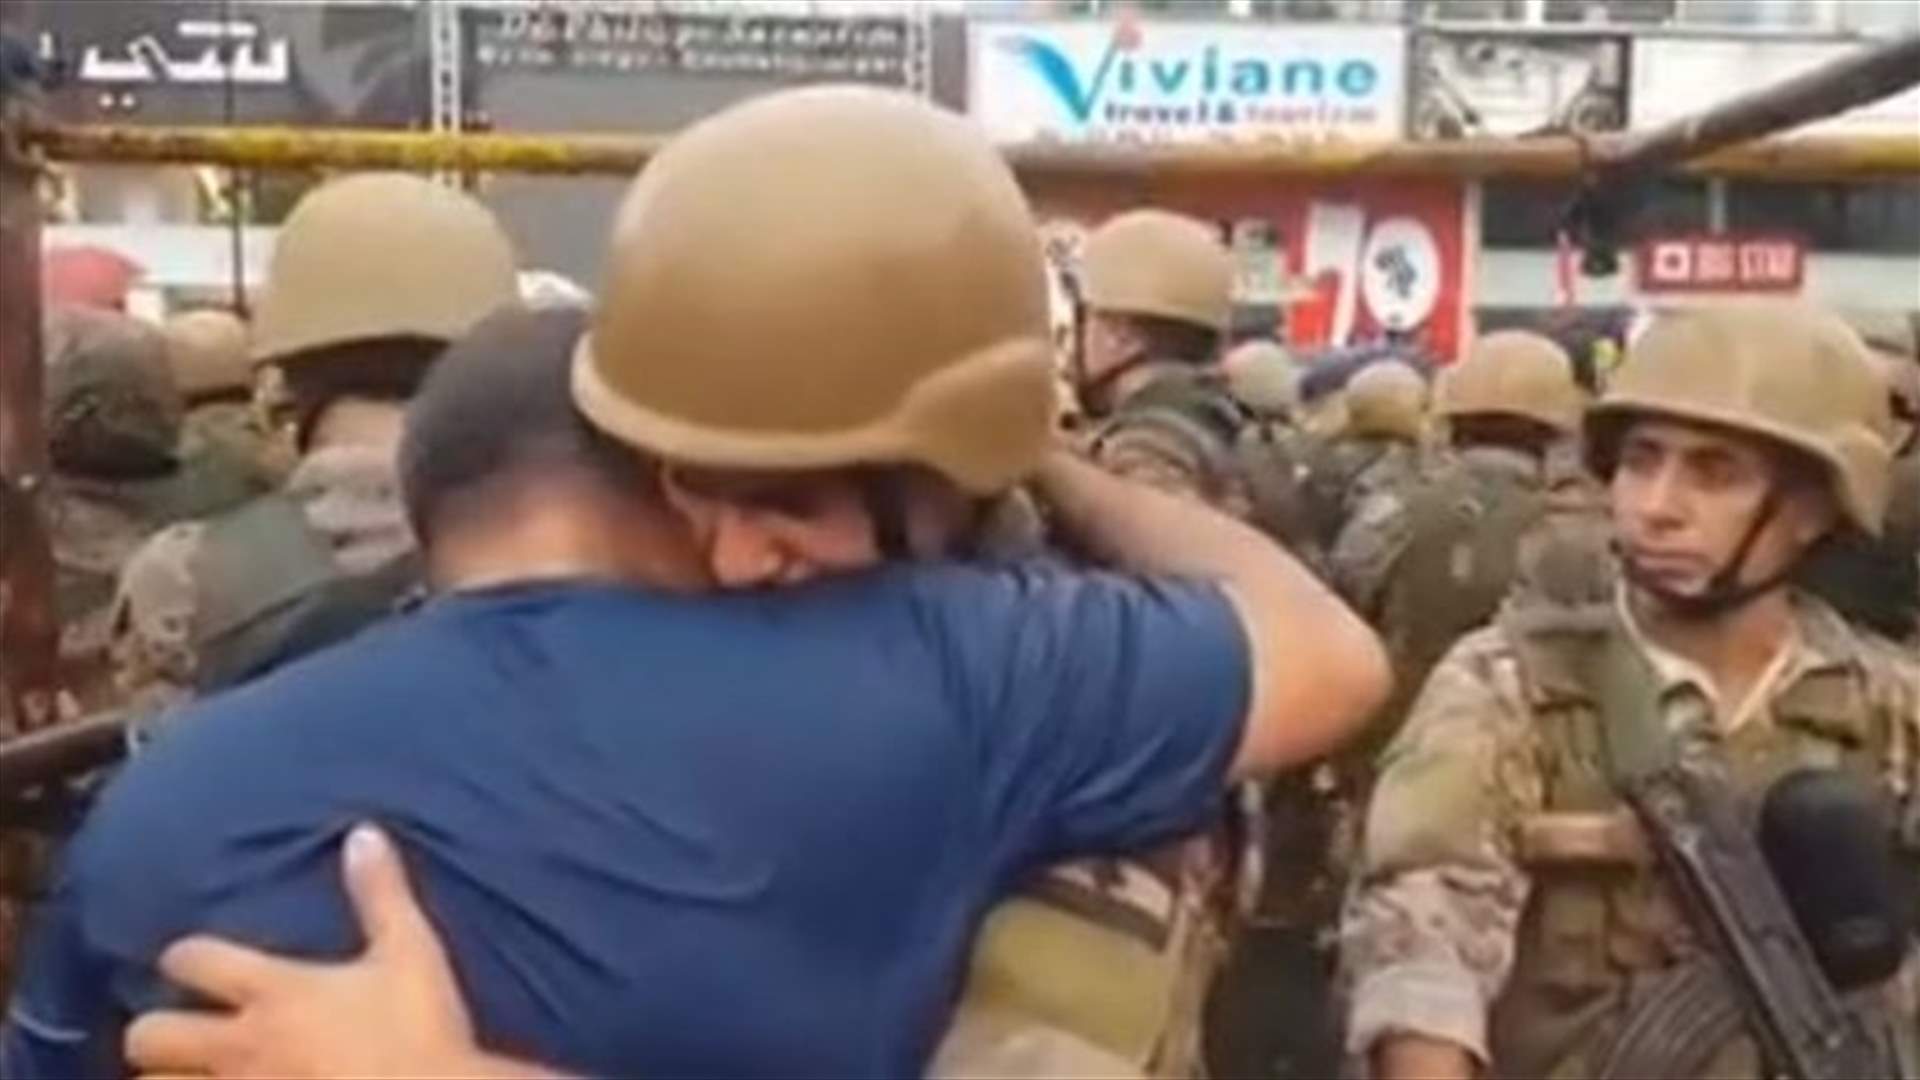 مشهد مؤثر في زوق مصبح: عنصر في الجيش يبكي ويُعانق أحد المتظاهرين (فيديو)